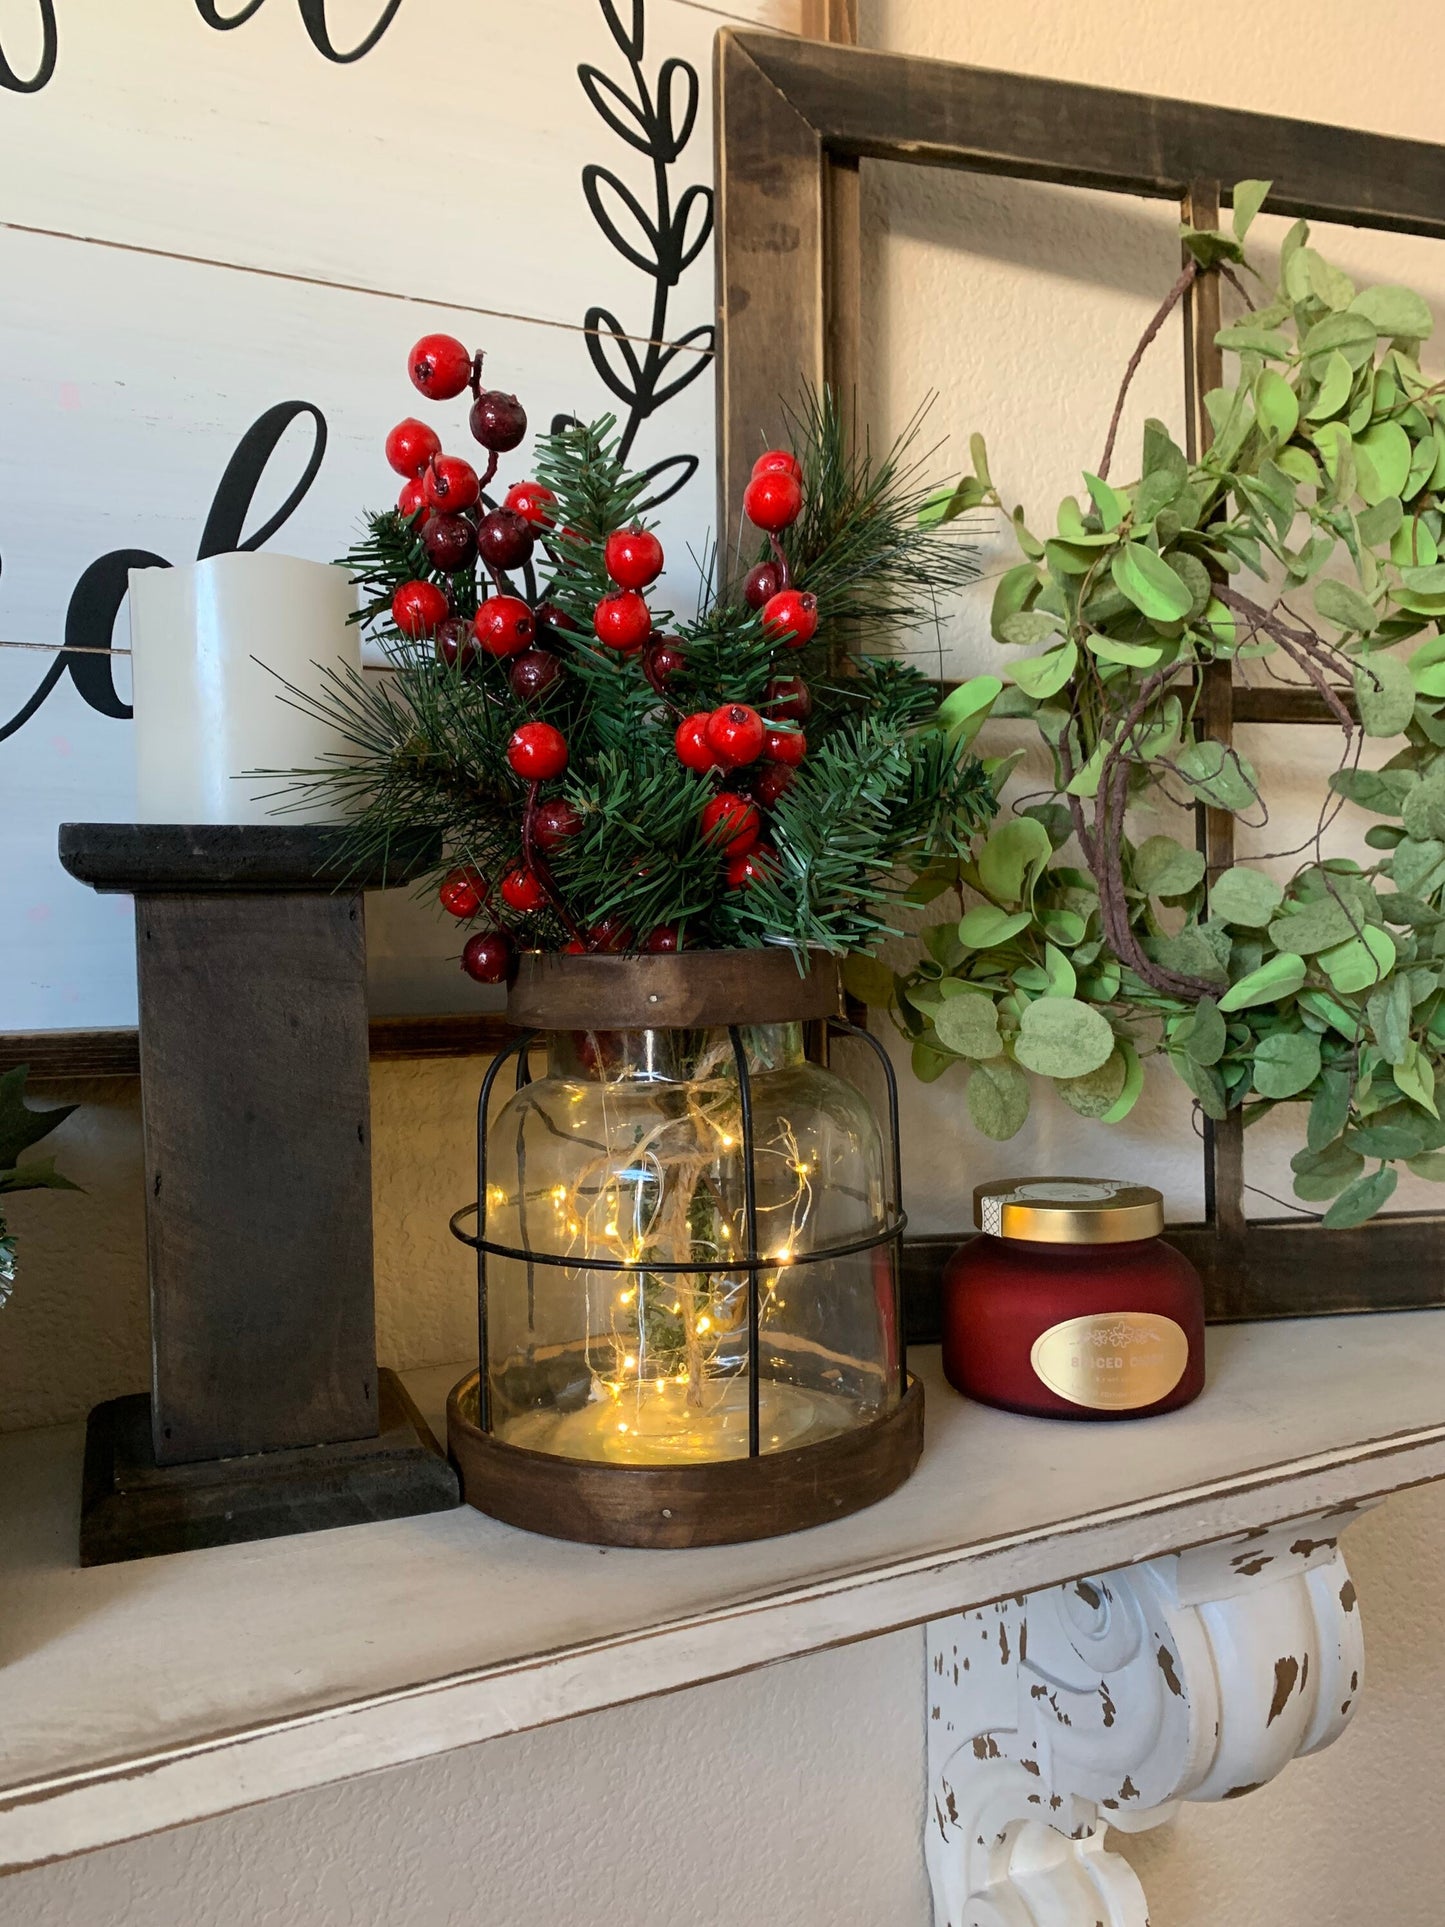 Vintage Style Farmhouse Christmas Vase, Christmas Decor, Rustic Christmas Vase, Christmas Floral Arrangement, Hostess Gift